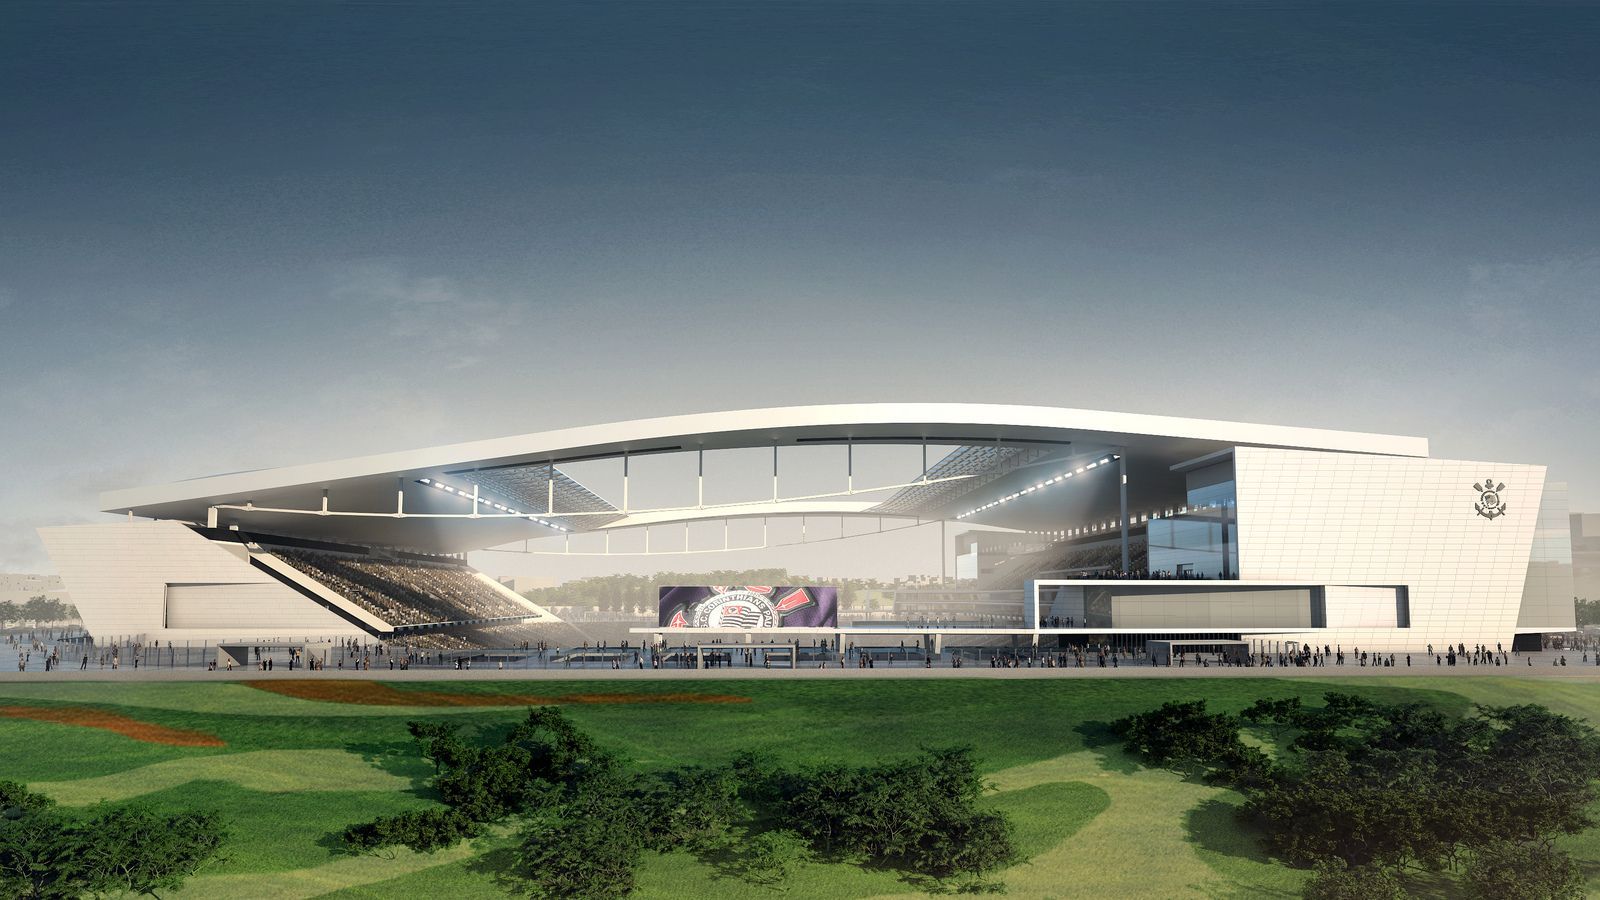 Design: Arena Corinthians